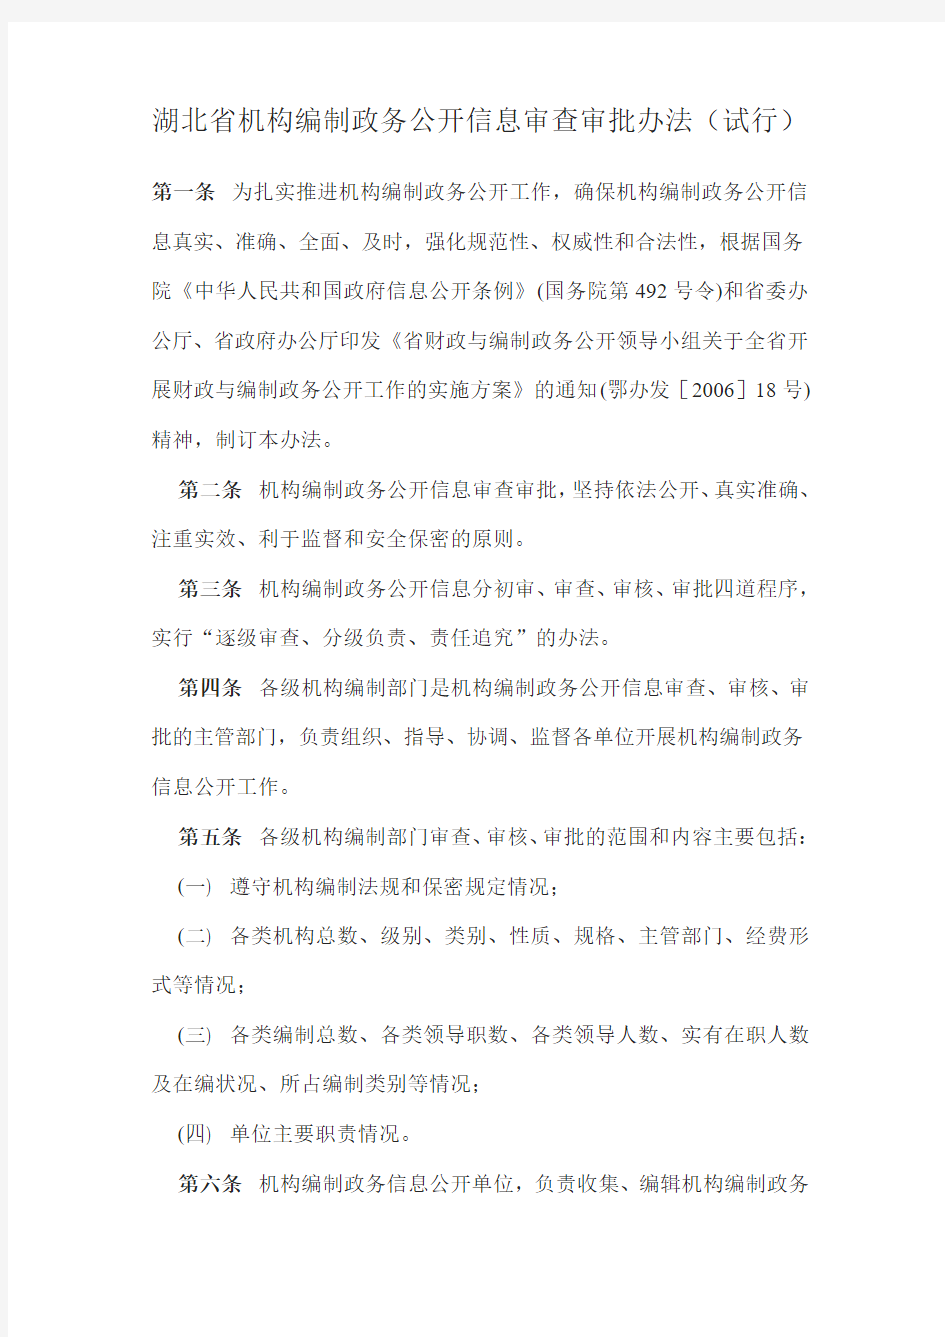 湖北省机构编制政务公开信息审查审批办法(试行)